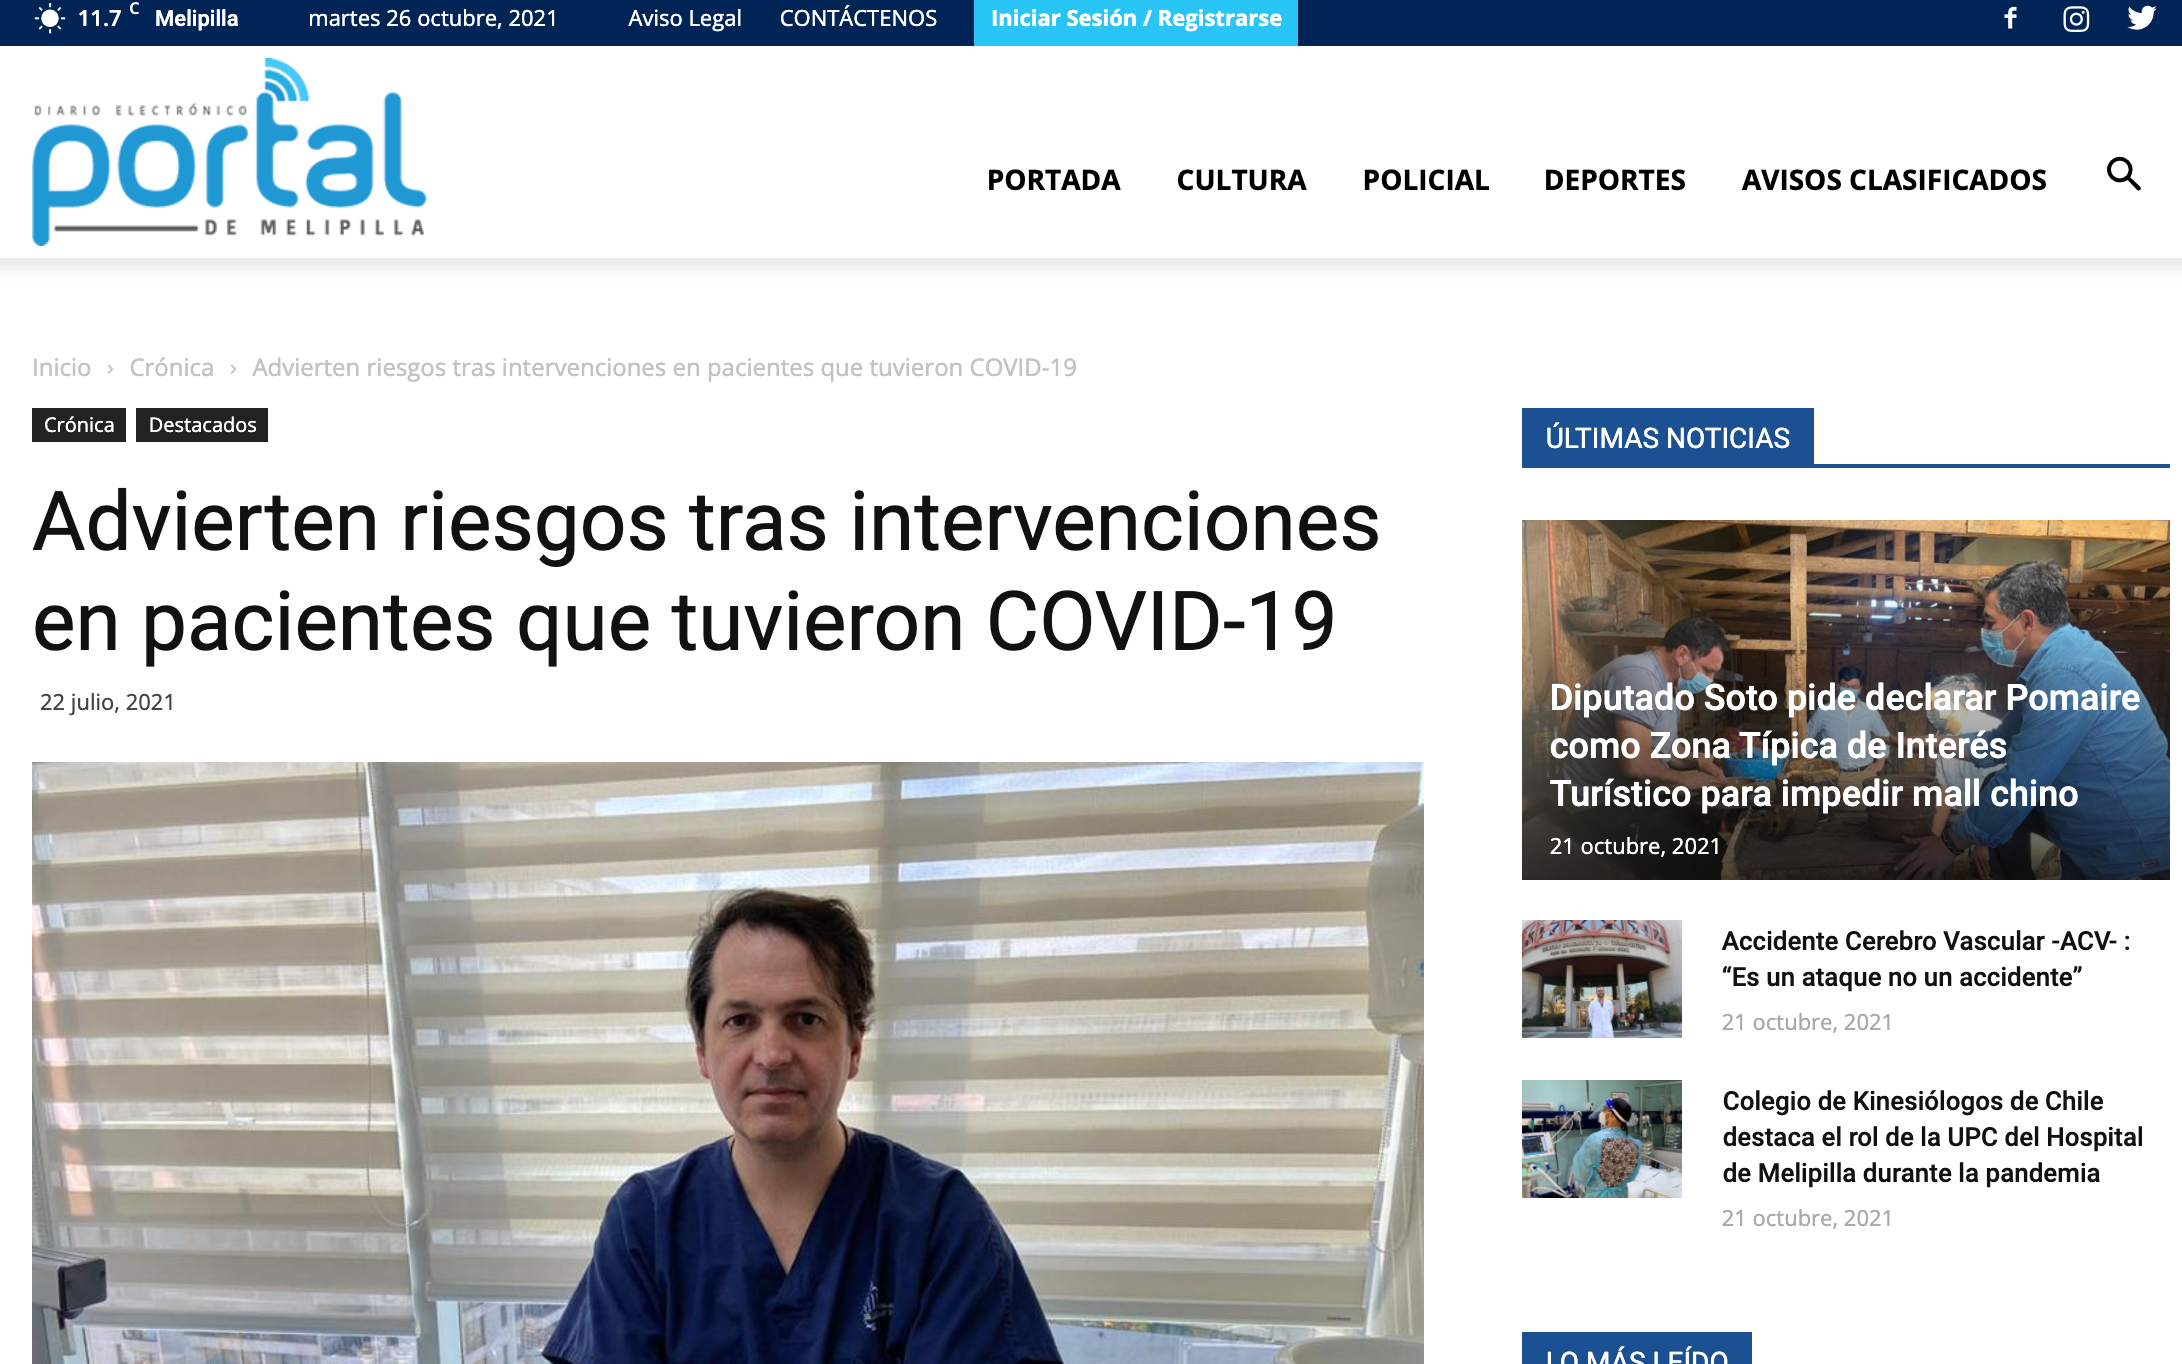 Doctor Torres habla con portal de Melipilla sobre riesgos COVID-19